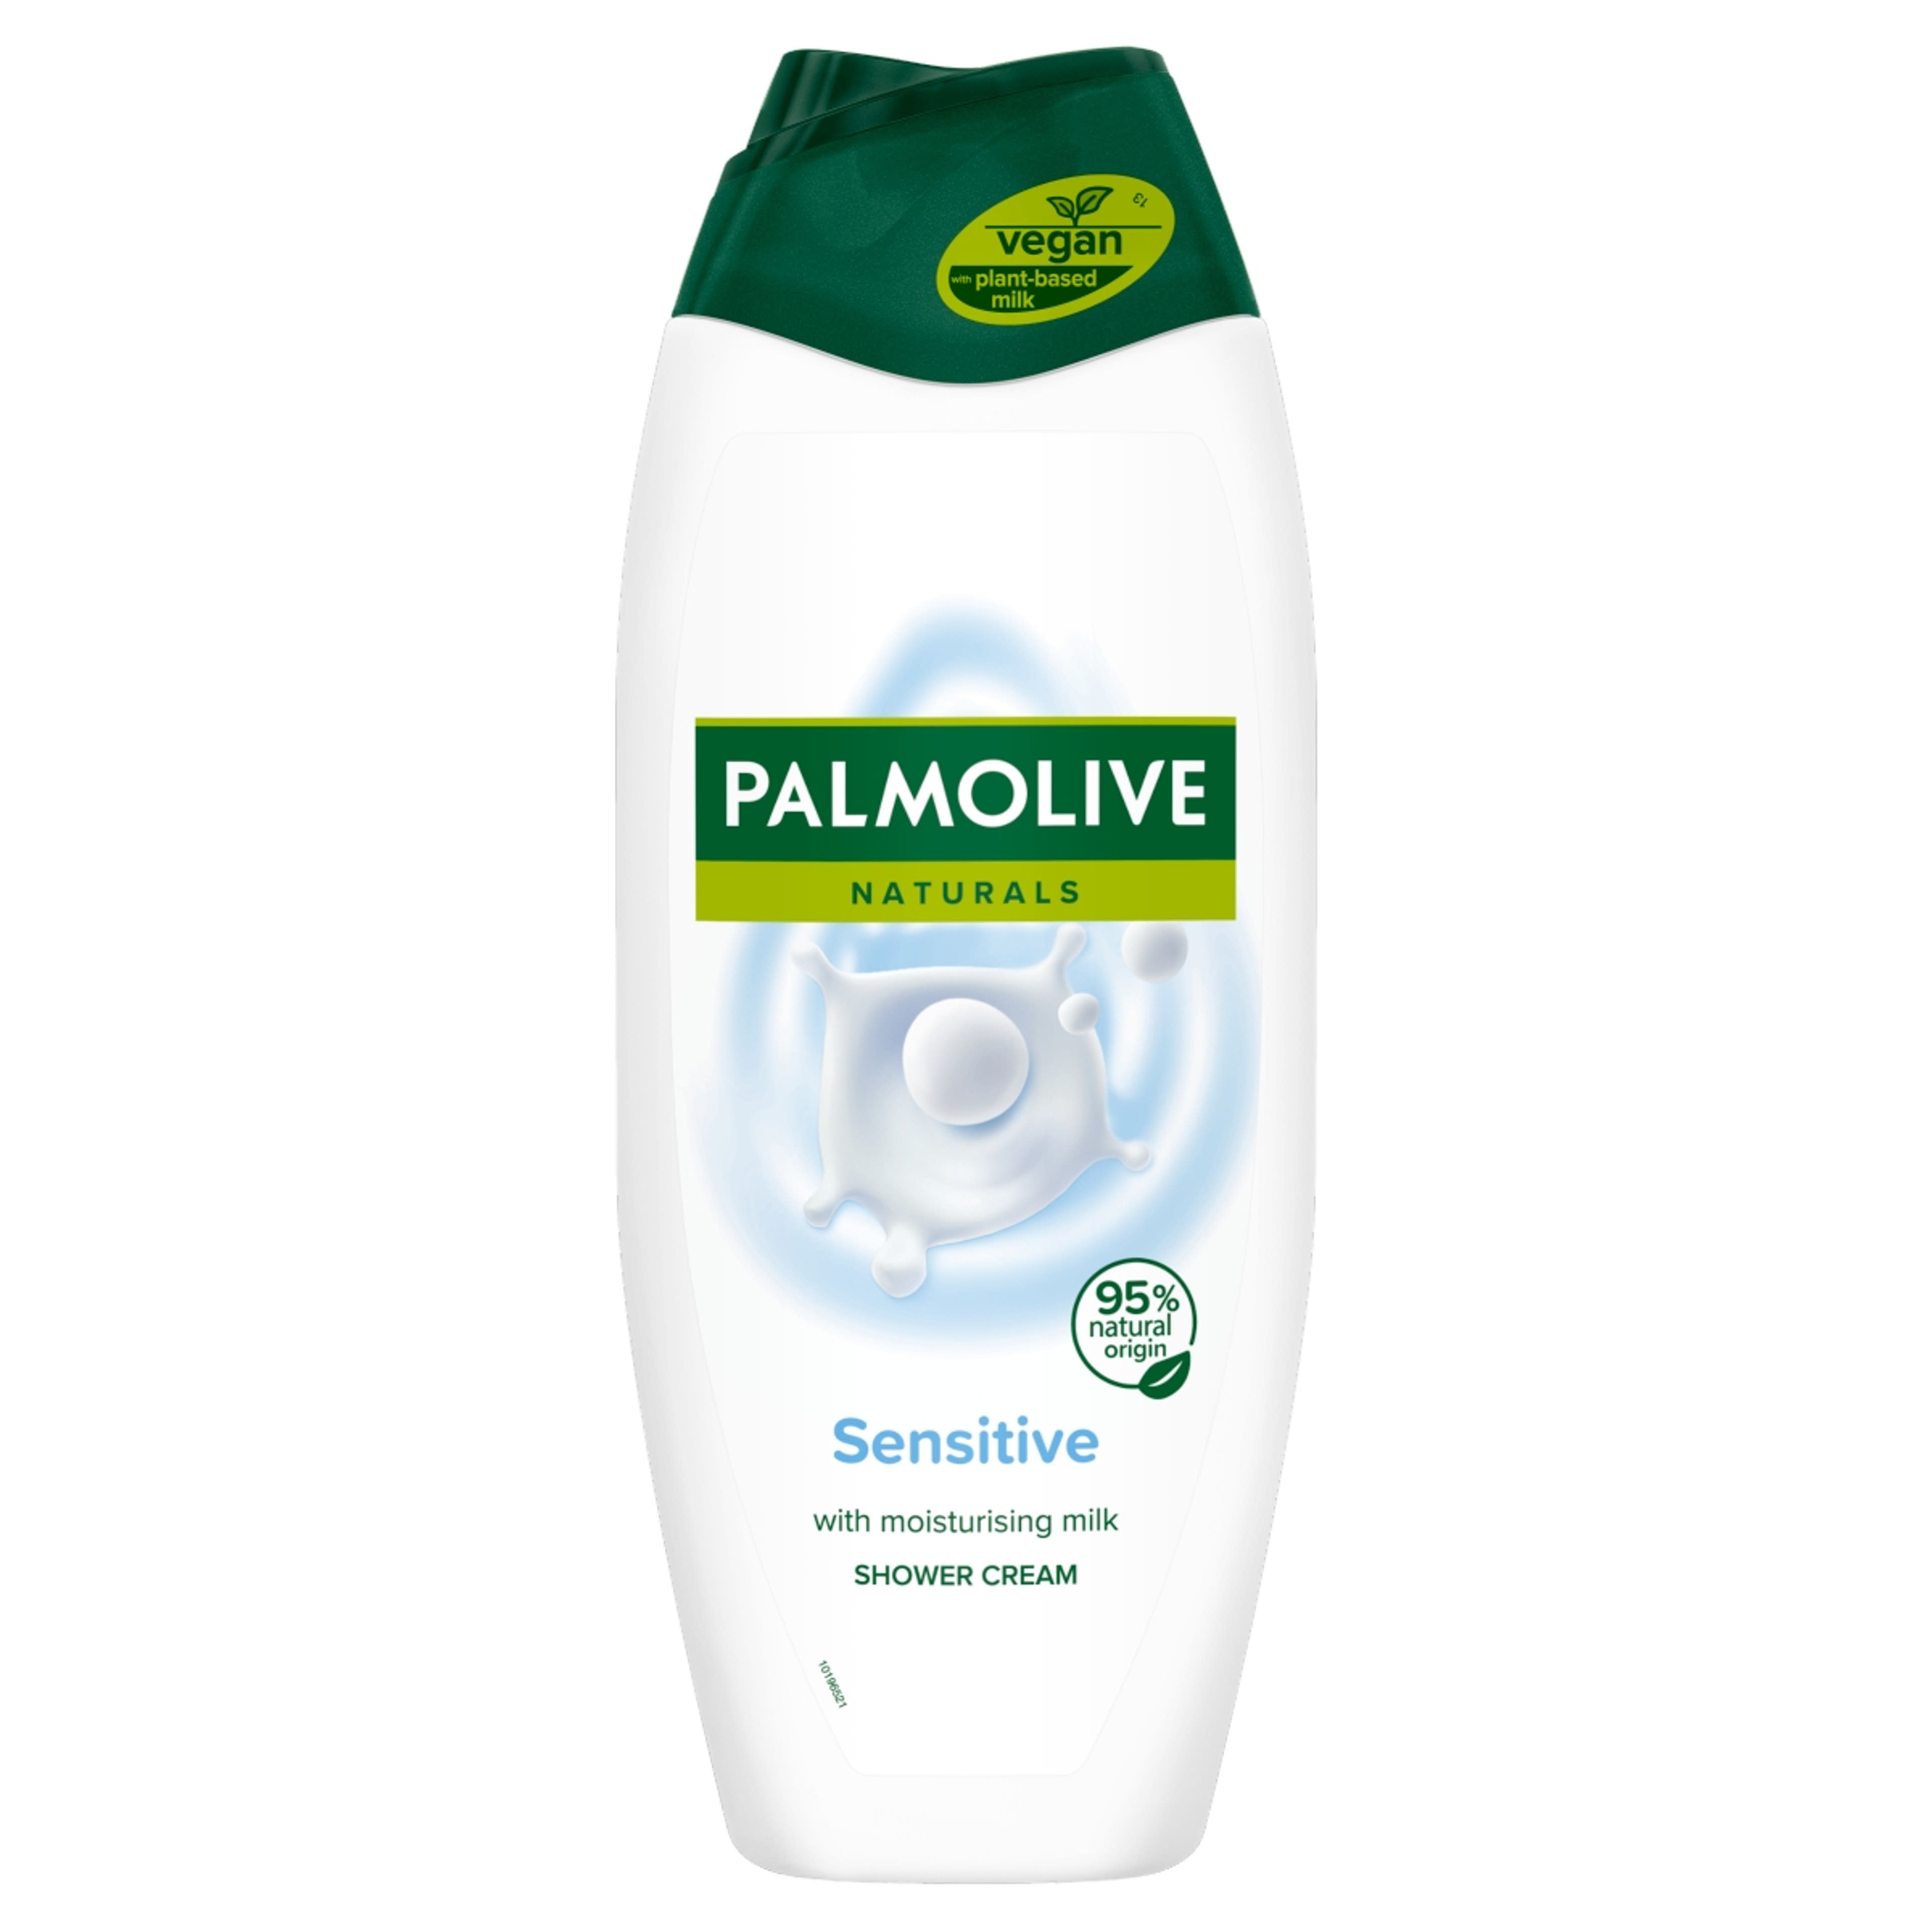 Palmolive Naturals Sensitive Skin Milk Proteins tusfürdő - 500 ml